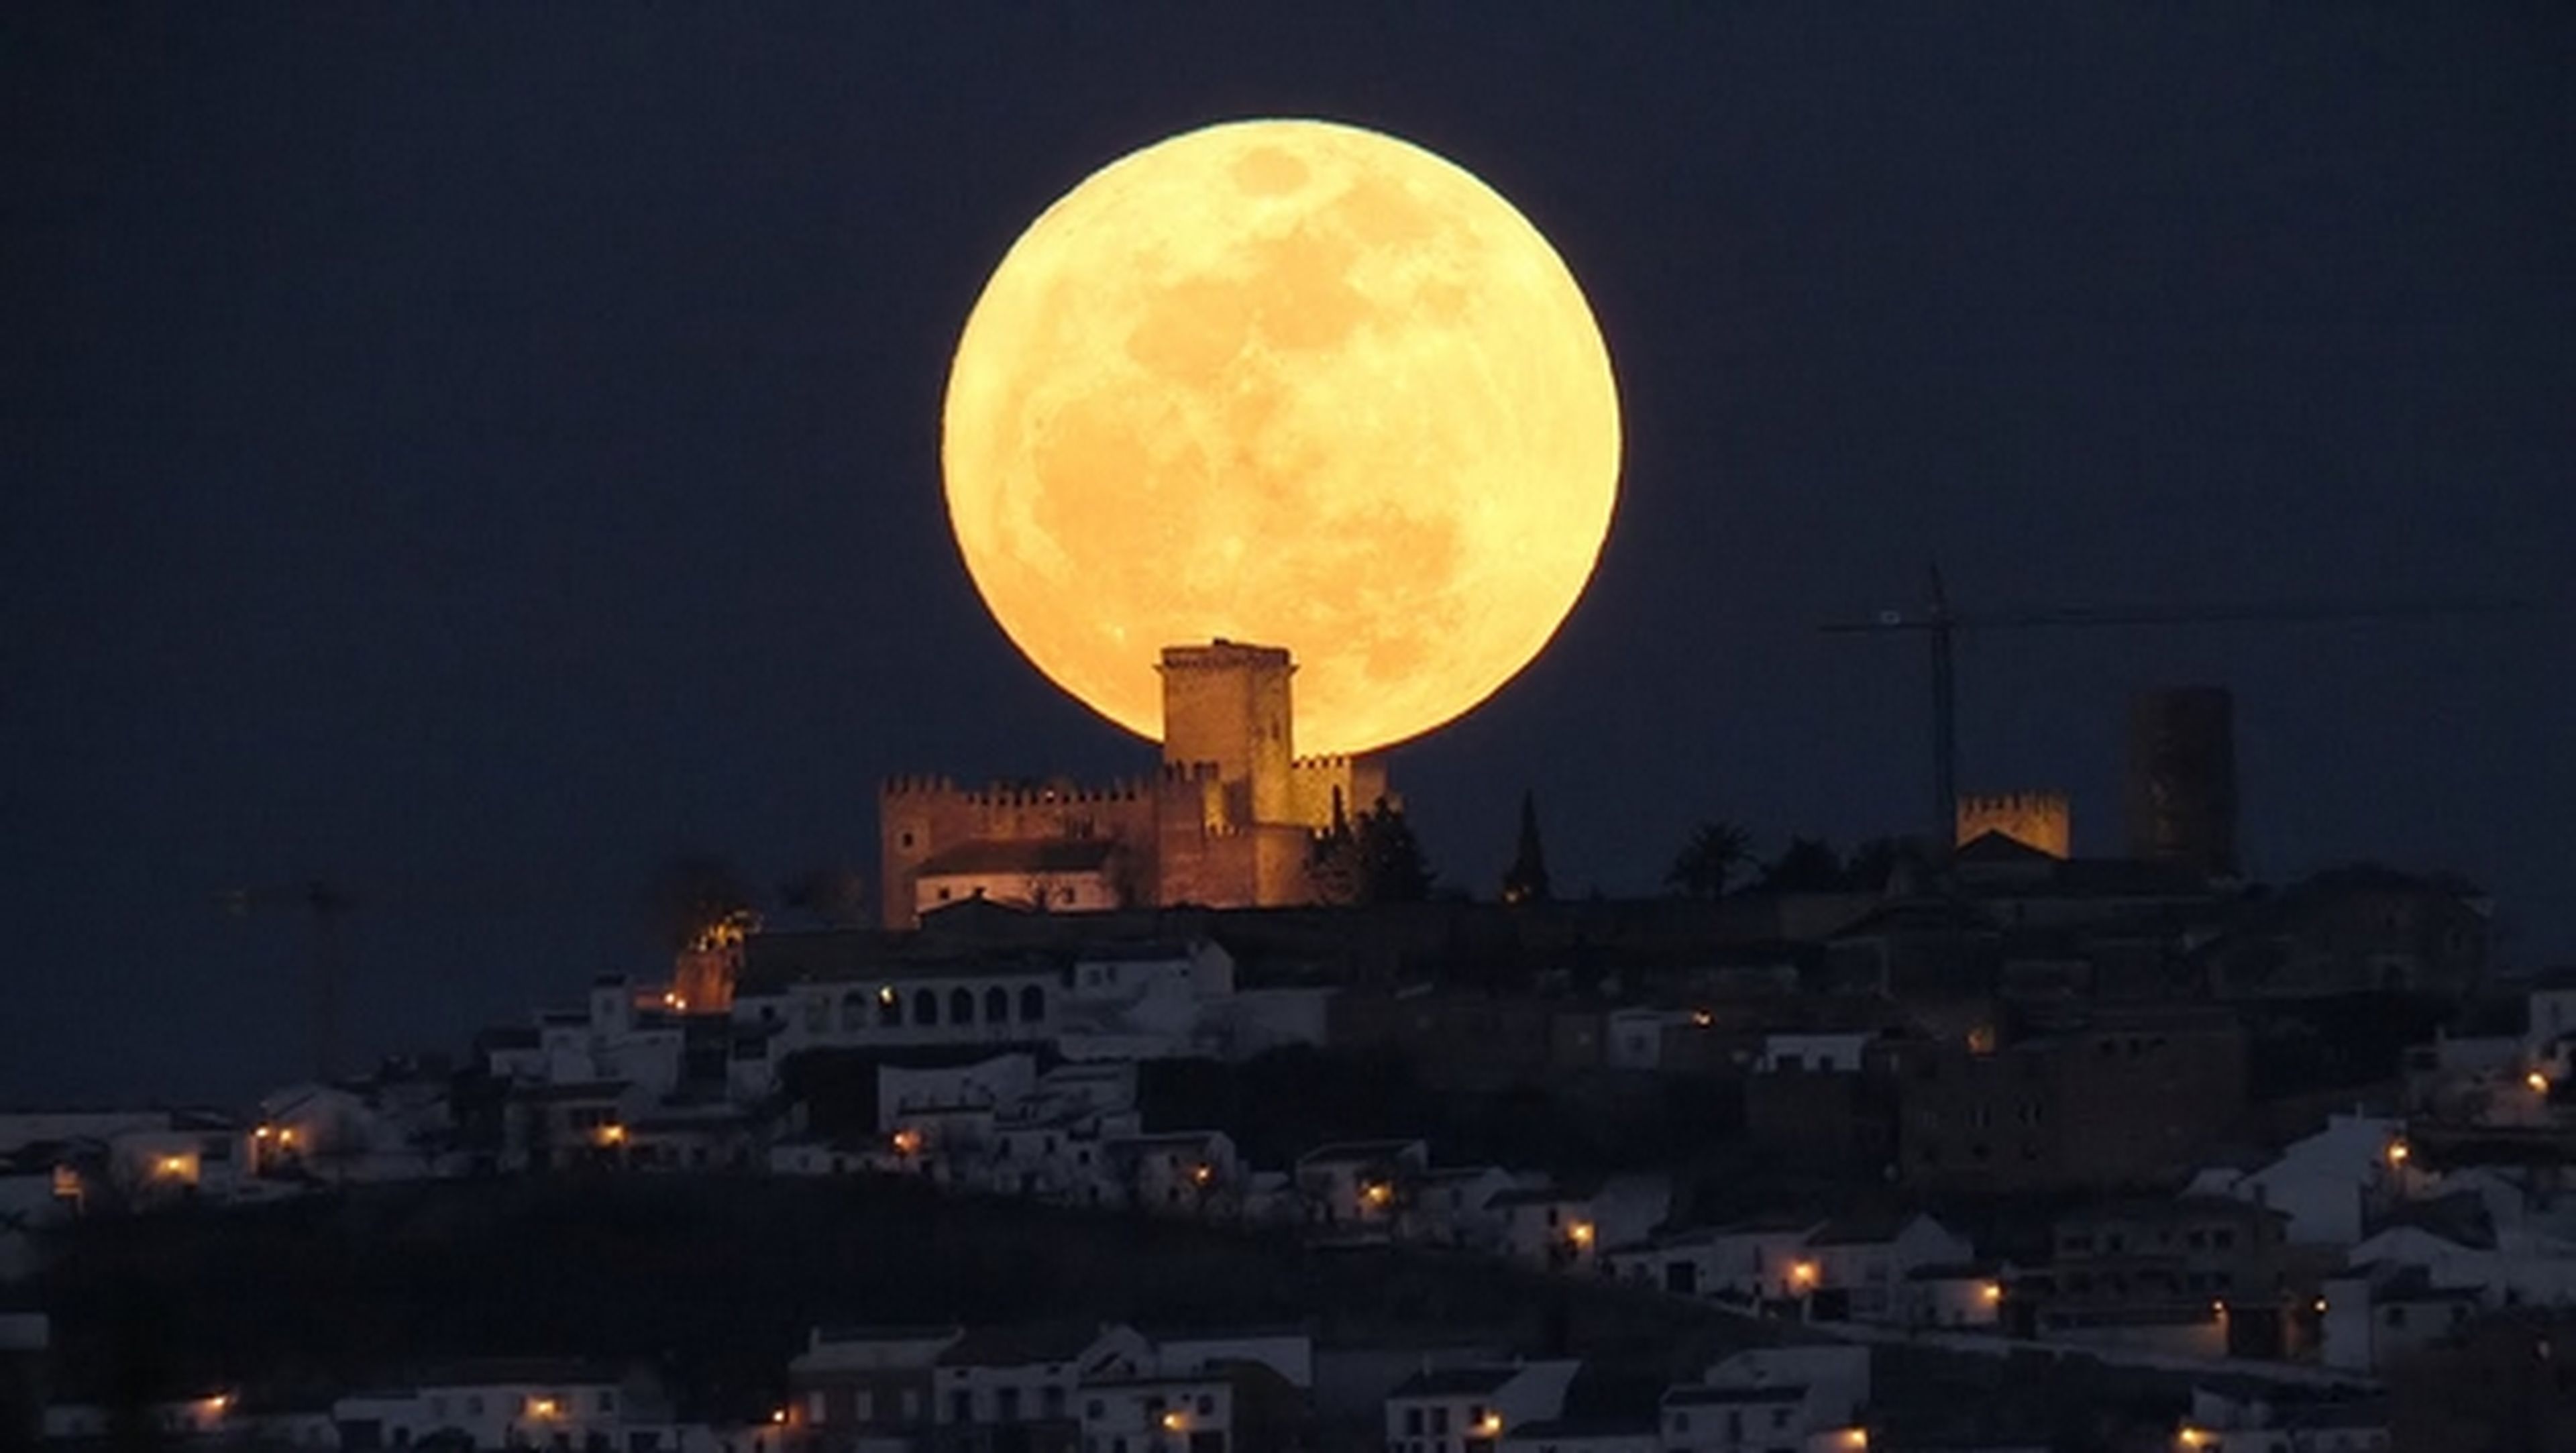 Llega la Superluna del 12 de julio. El mejor momento para fotografiar la Luna, más grande y luminosa.